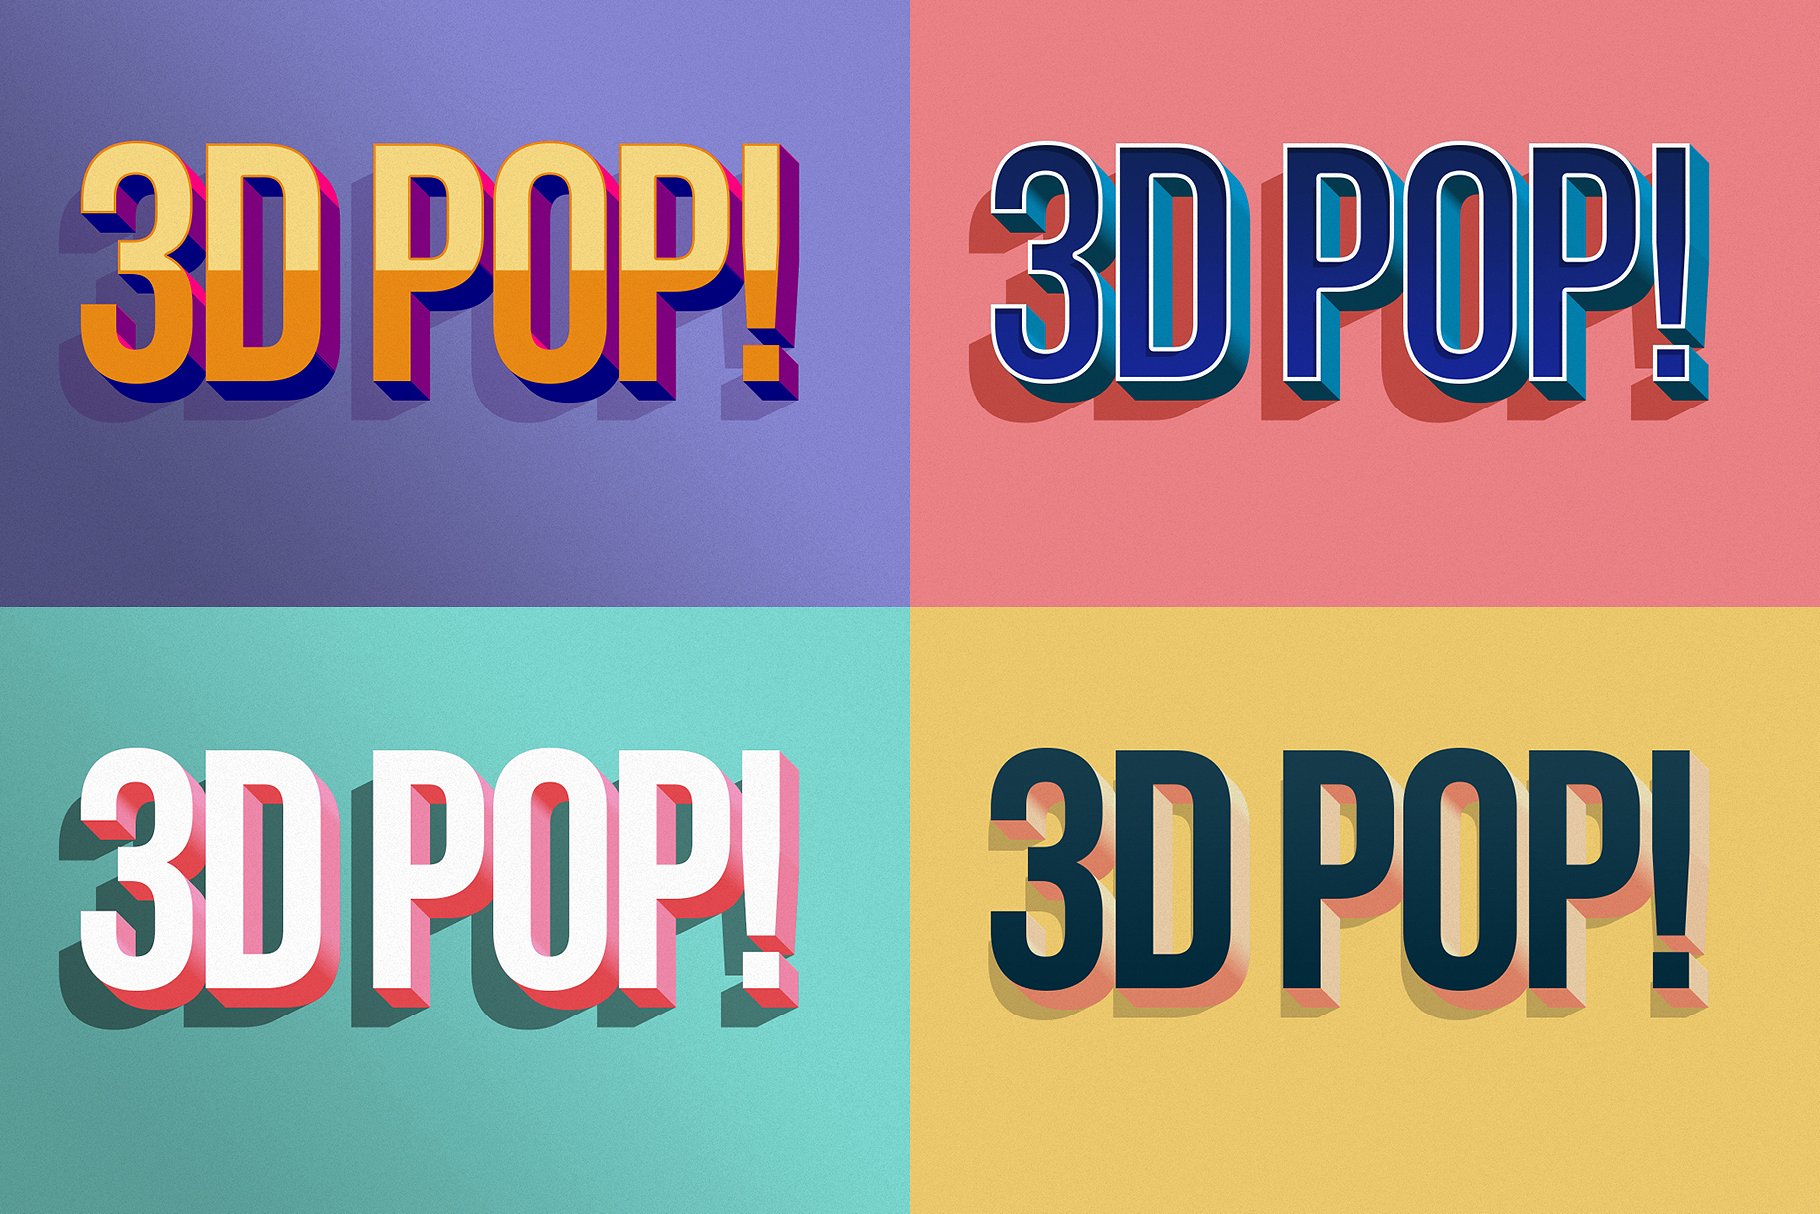 10款“吸睛大法”3D立体文字图层样式 3D POP! Photoshop Effects插图(8)